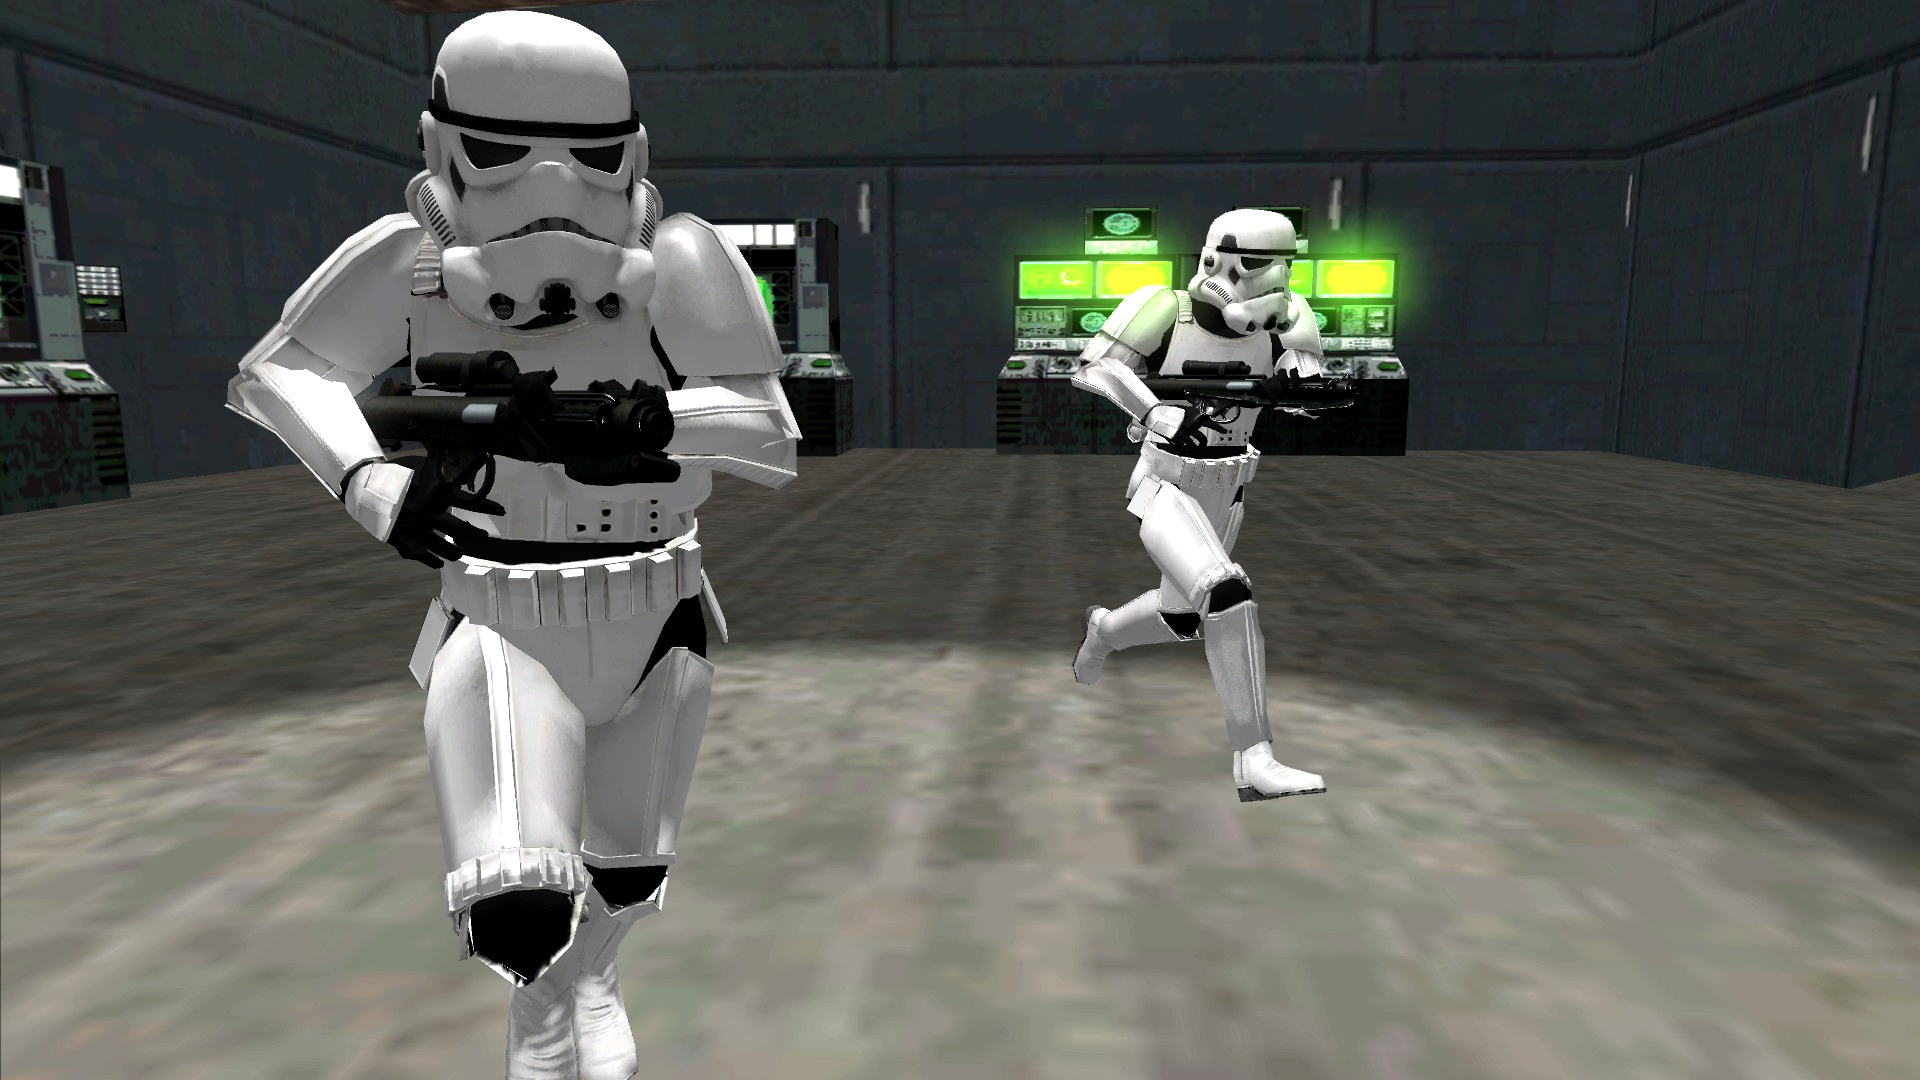 New Stormtrooper Model Completed Image Battlefront Ultimate Commander Mod For Star Wars